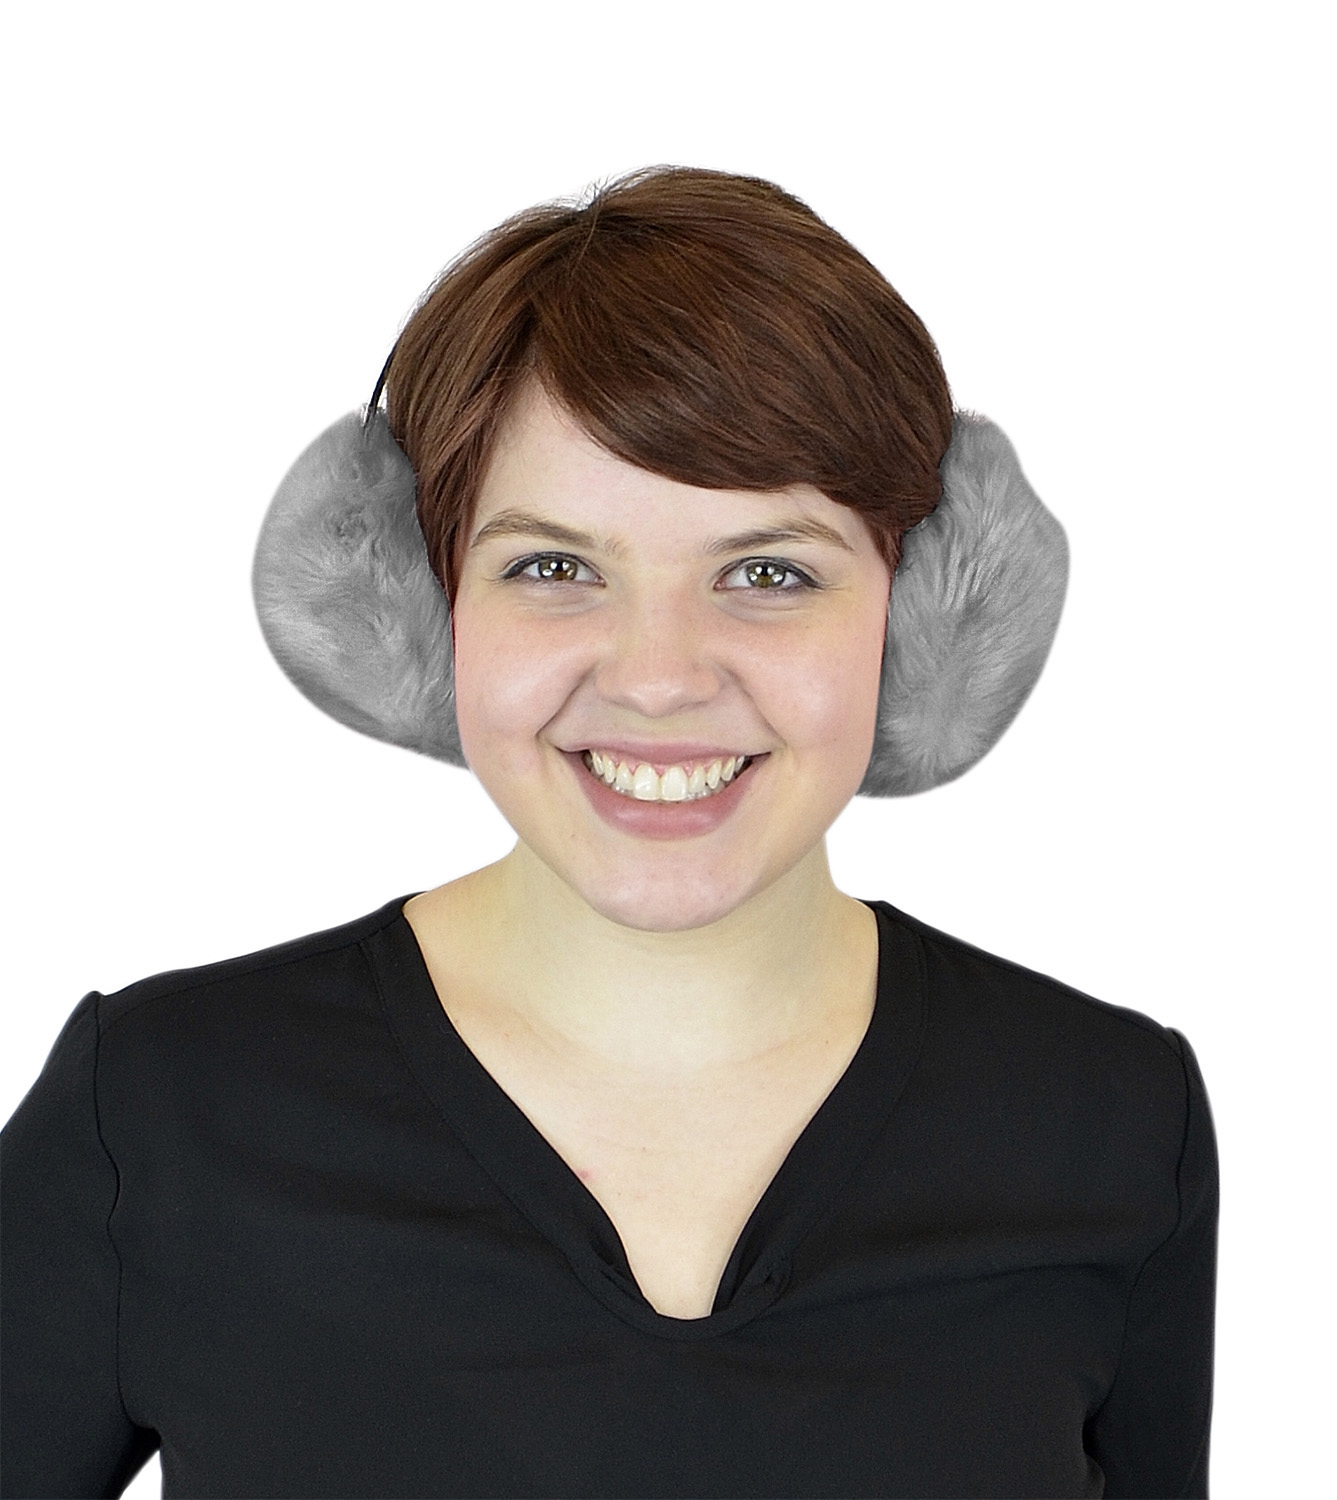 Women's Winter Ear Warmers - Faux Furry Warm Outdoors Ear Muffs - Fashion Earbands and Earmuffs by Belle Donne - Gray